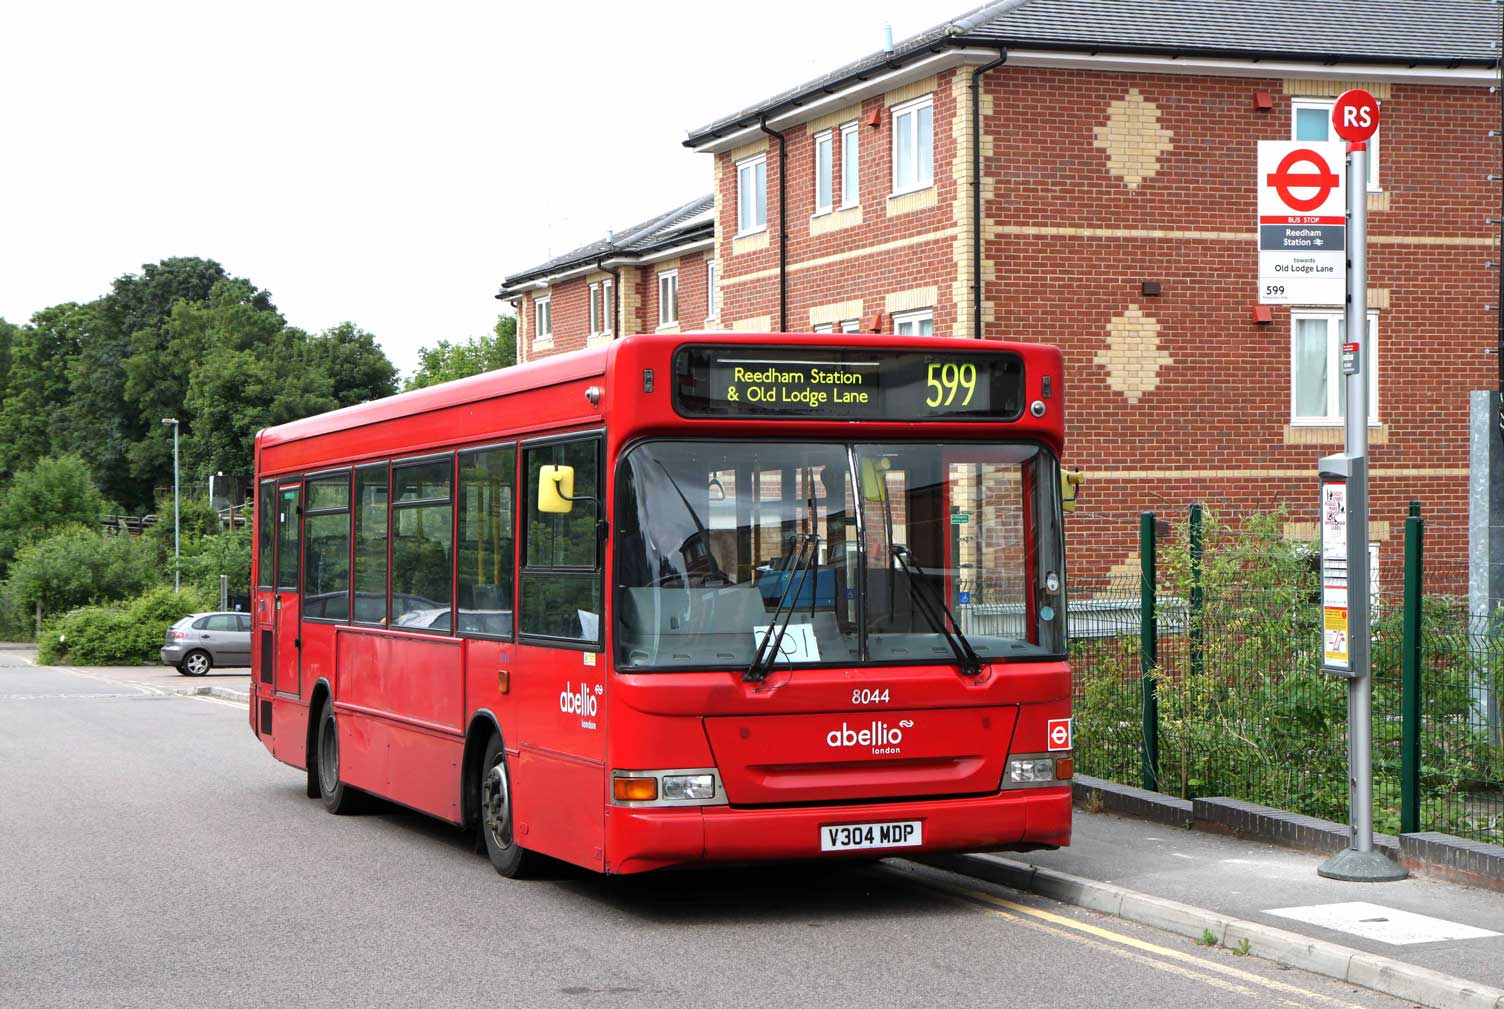 Bus 599